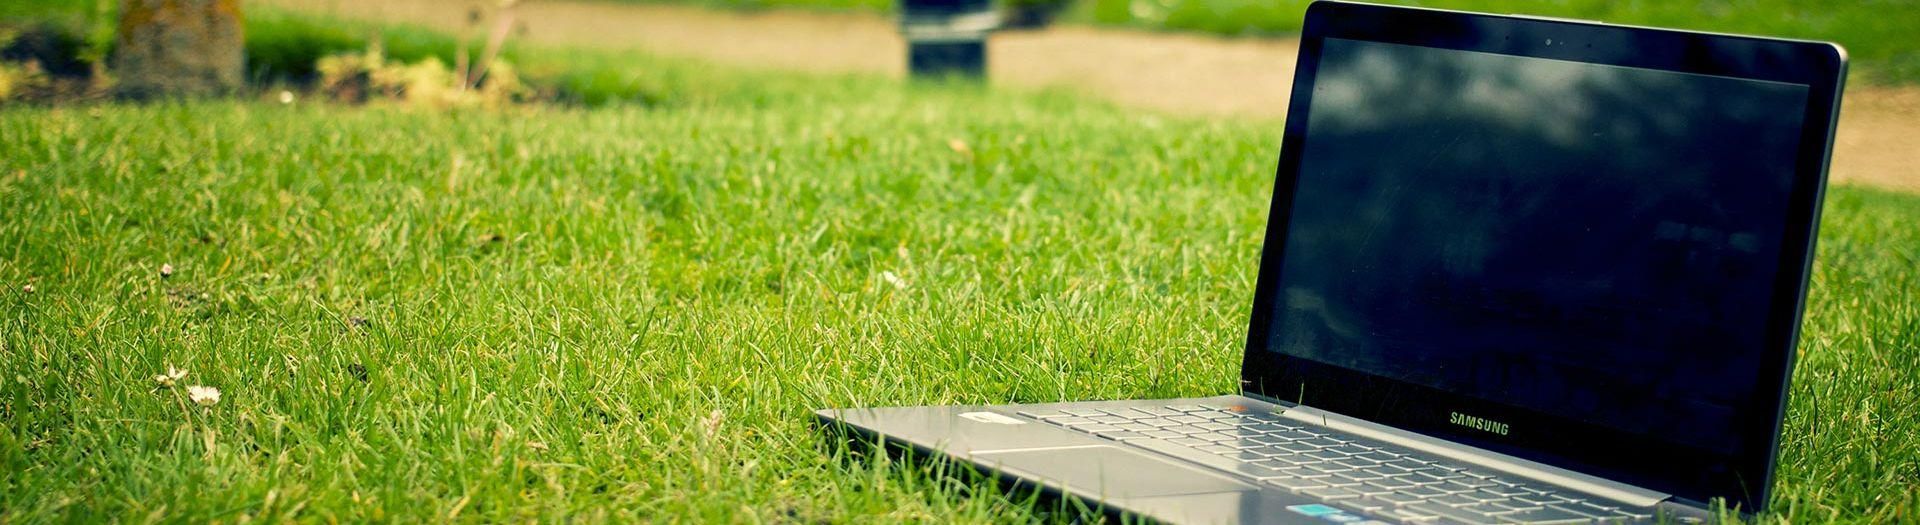 laptop-notebook-grass-meadow-9b558d75 Portal Mail